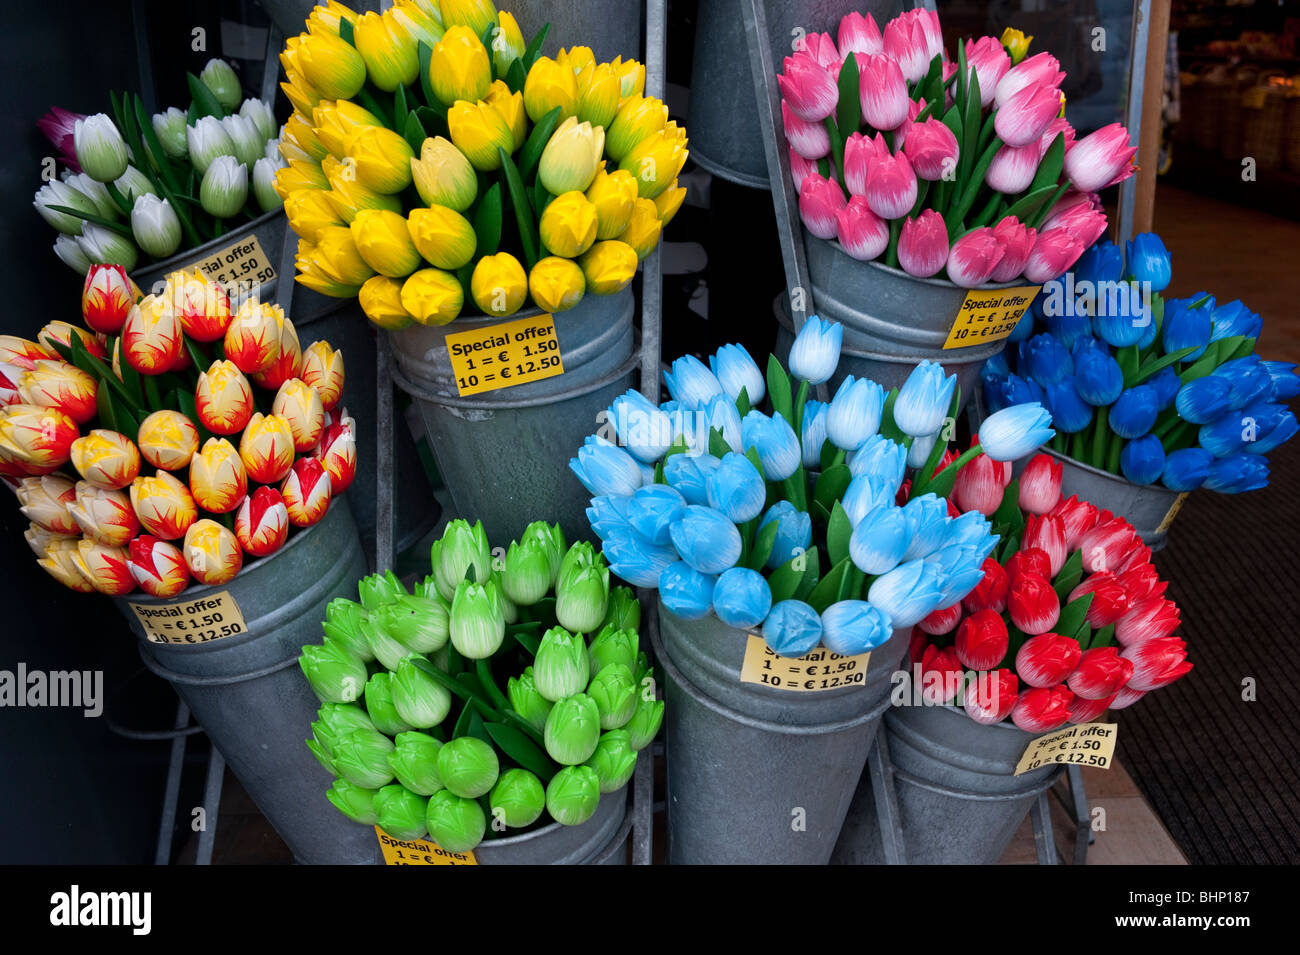 De nombreux détails en plastique coloré fleurs tulipes dans une boutique touristique à Amsterdam Pays-Bas Banque D'Images